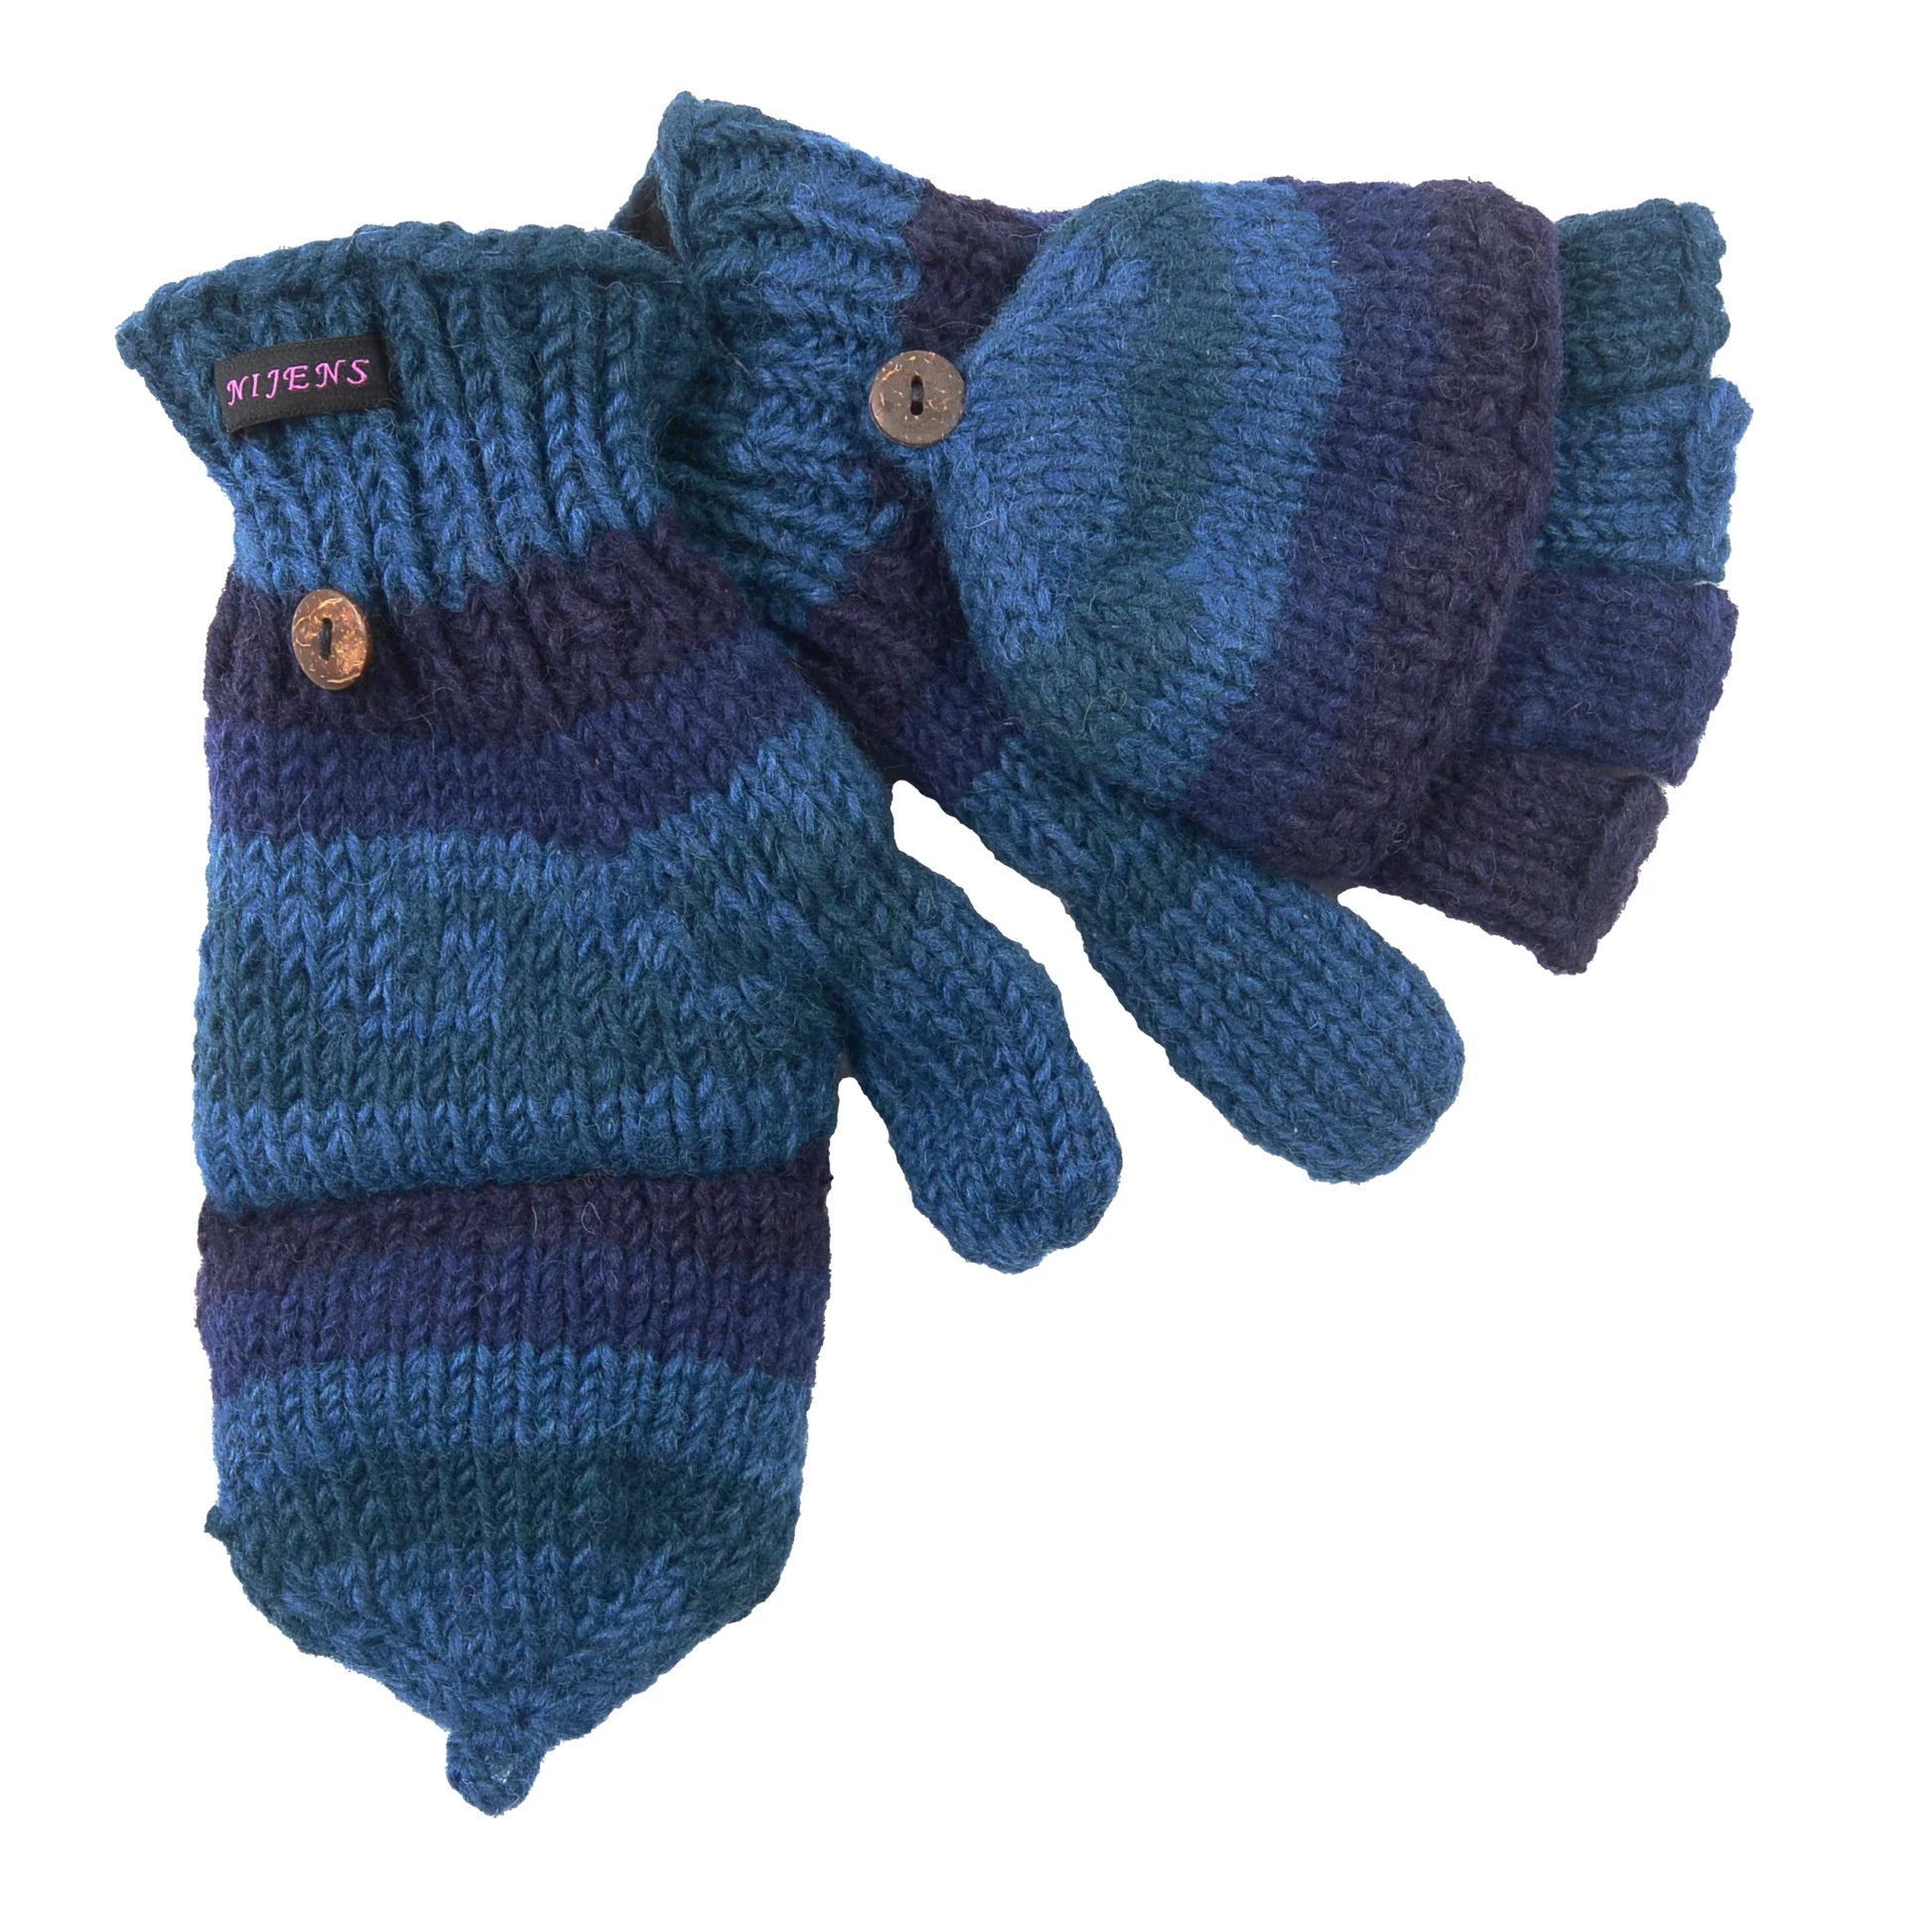 Nachtblaue fingerfreie Handschuhe aus Wolle, welche sich mit einer Fingerabdeckung zu Fäustlingen umwandeln lassen.